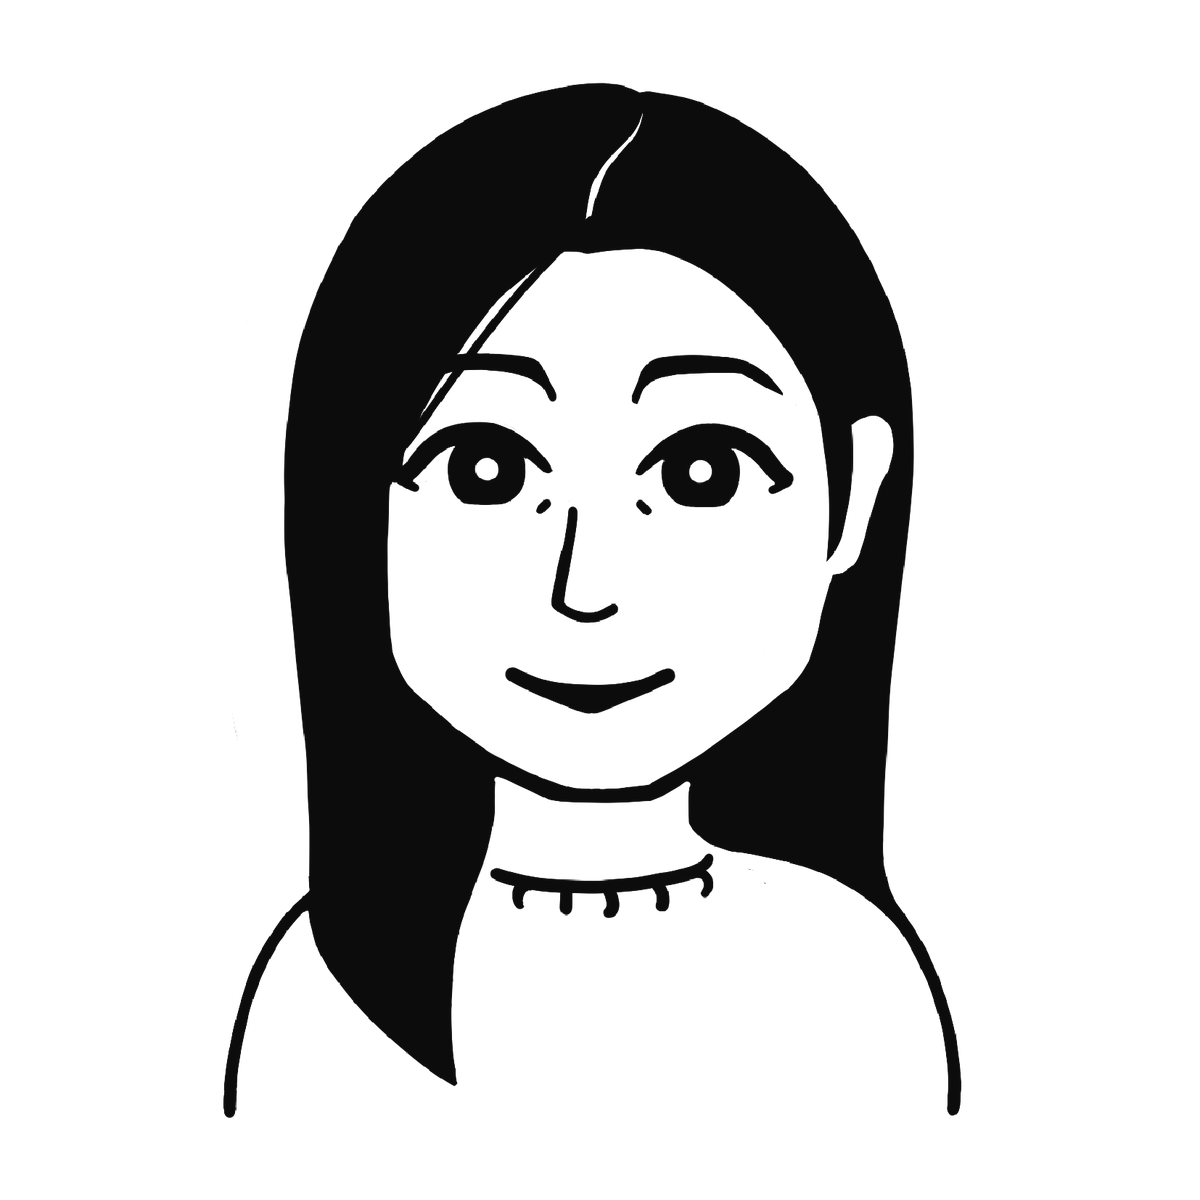 今日は壇蜜さんを描きました。

似顔絵を描いて欲しい方は、
お気軽にご相談ください!
こんな感じのモノクロ似顔絵は一枚2000円です。
複数人やカラーも可能です。

ぜひとも。
#似顔絵  #イラスト依頼 #イラスト 